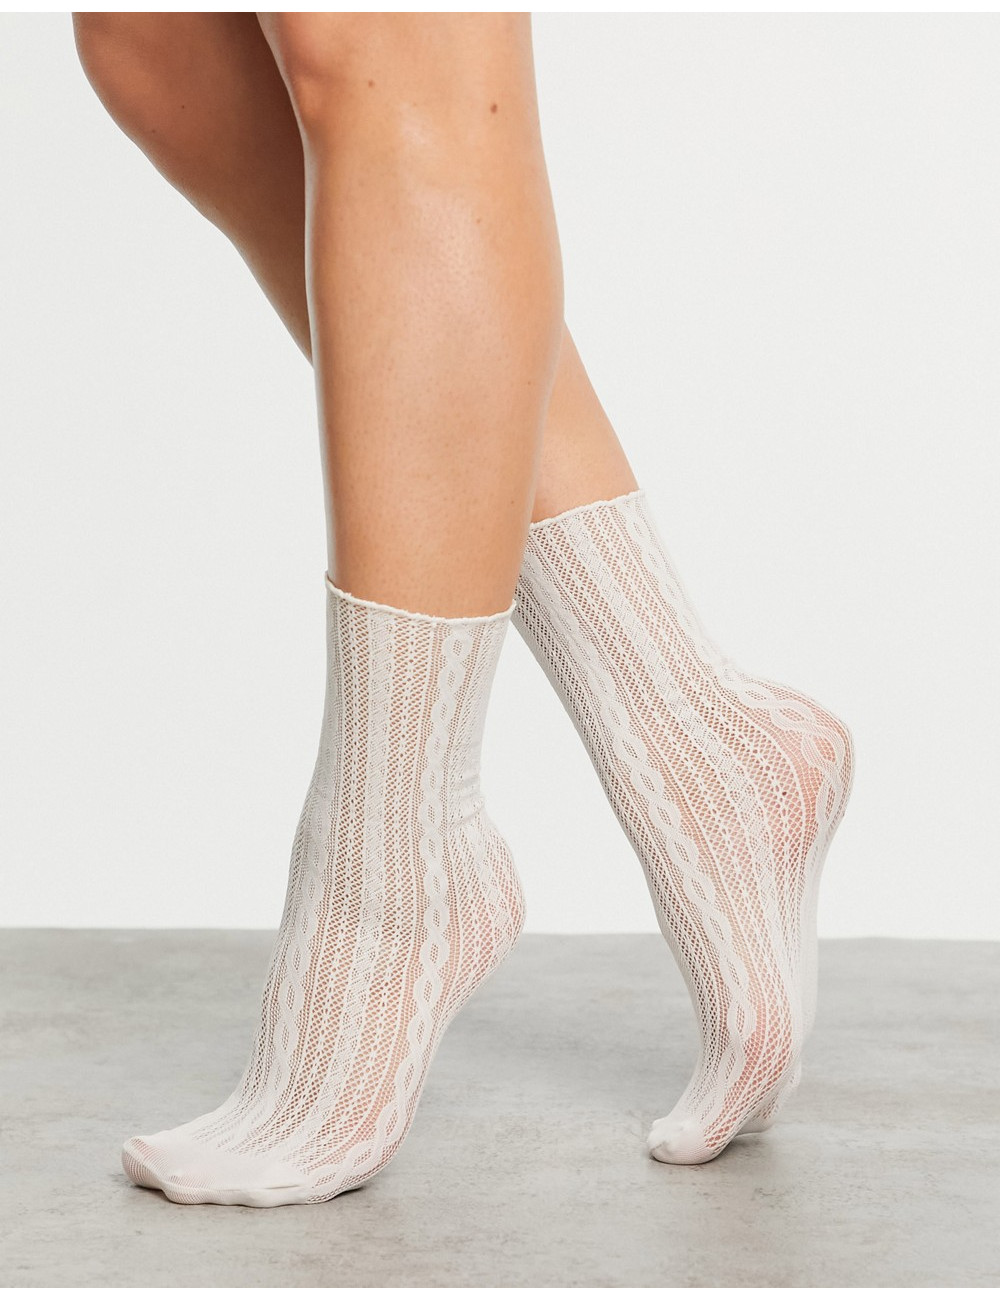 Gipsy lace sock in cream